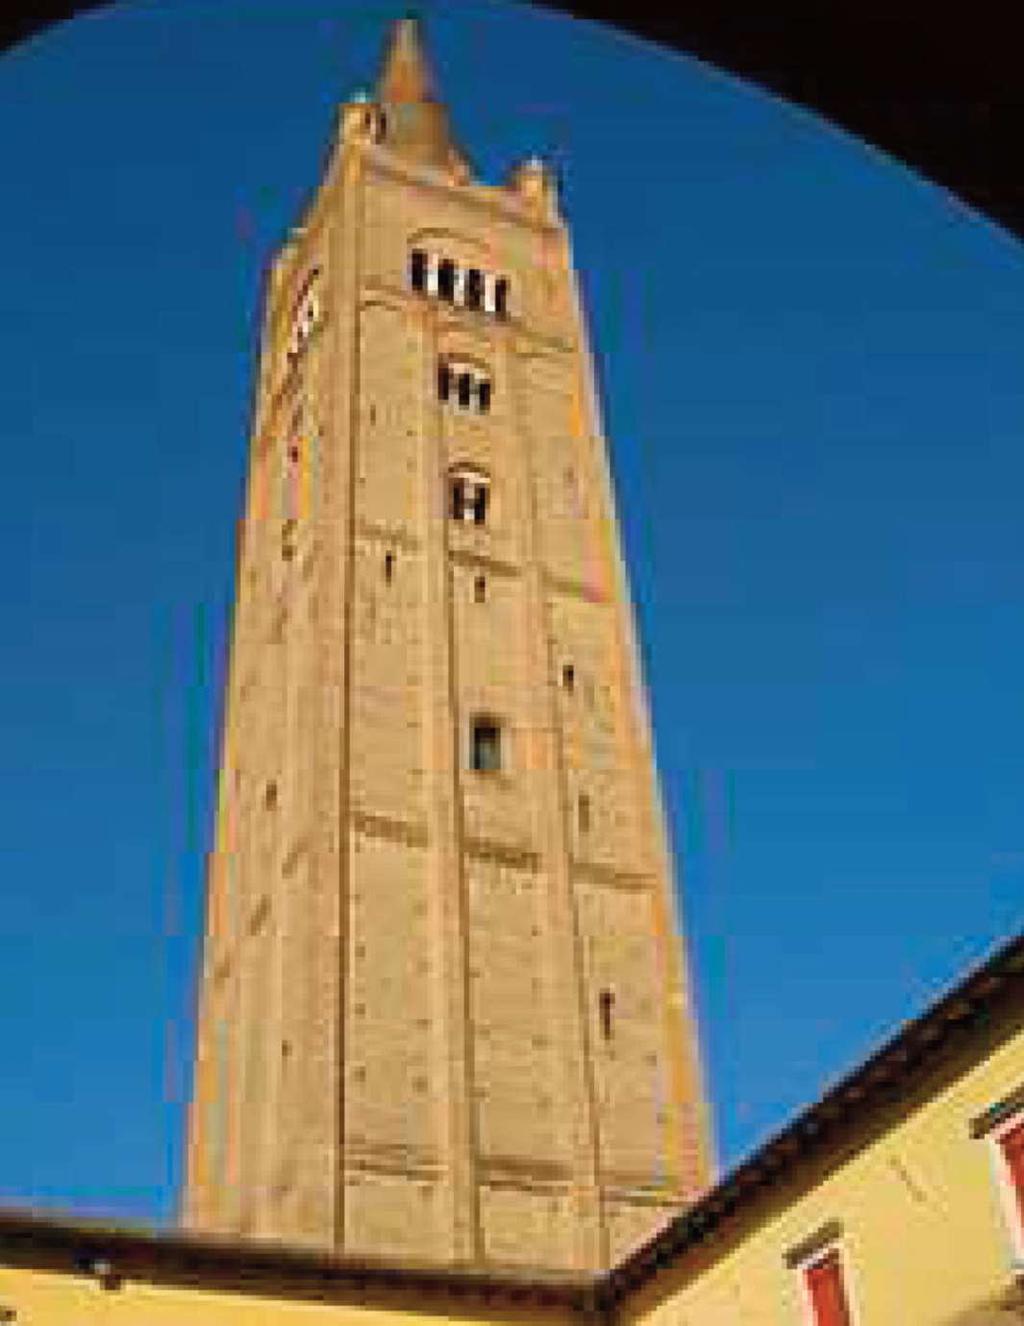 Sie ist Kreisstadt der Provinz Forlì-Cesena in der Romagna und auch linguistisches Zentrum des romagnolischen Dialektes.